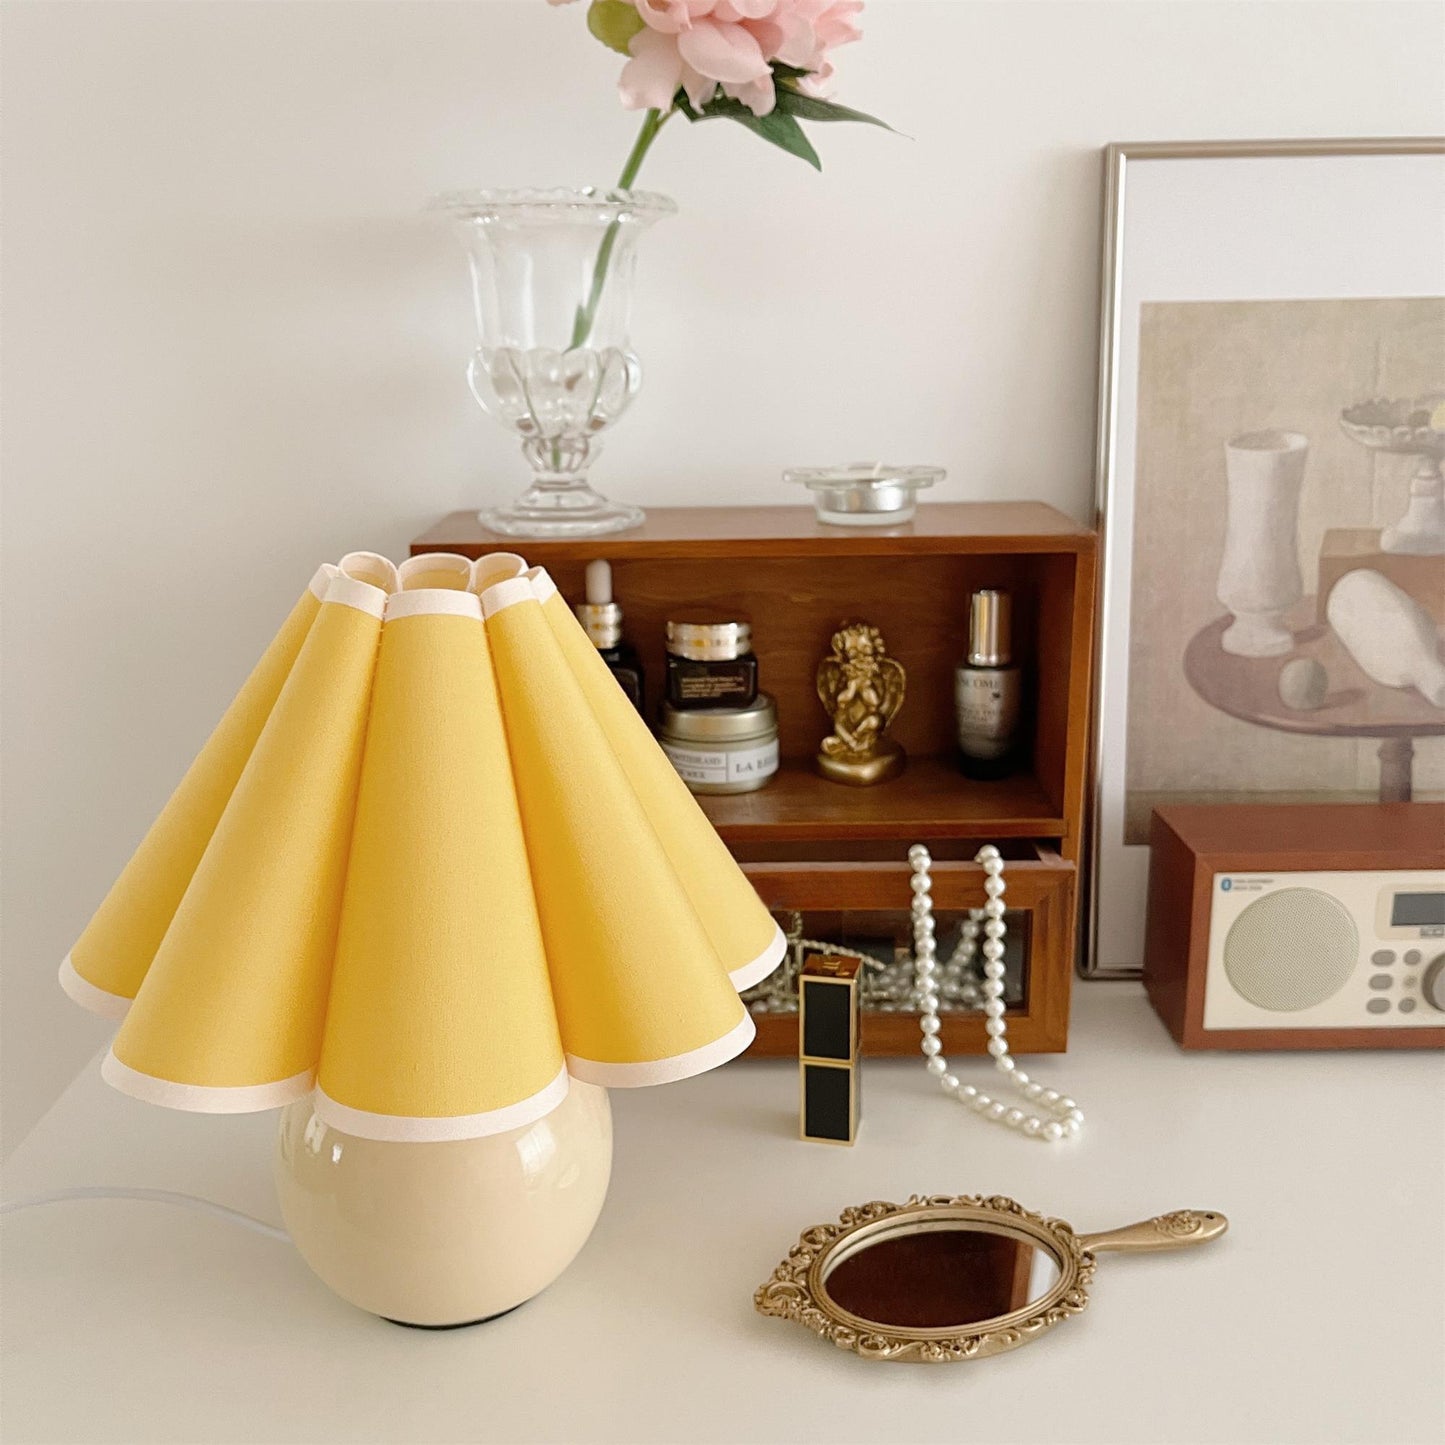 Ellie Pleat Table Lamp